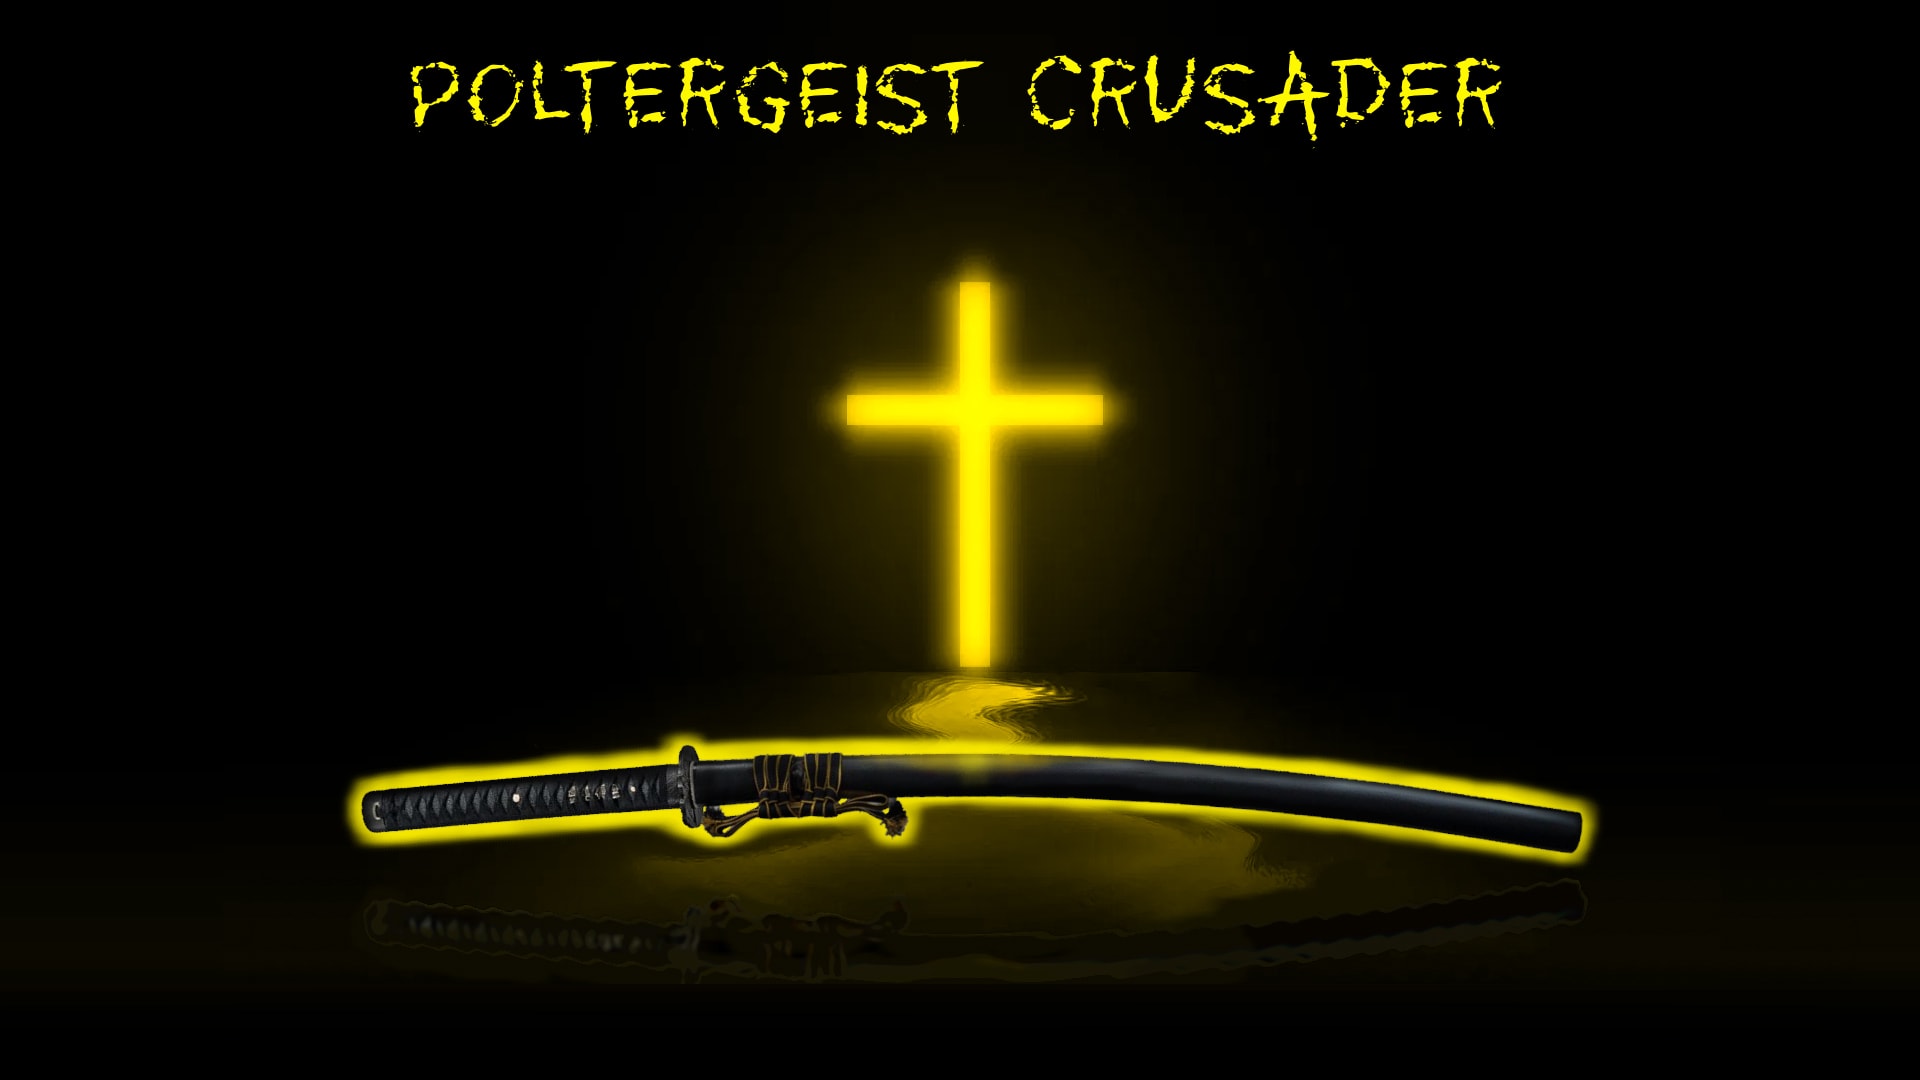 Poltergeist Crusader